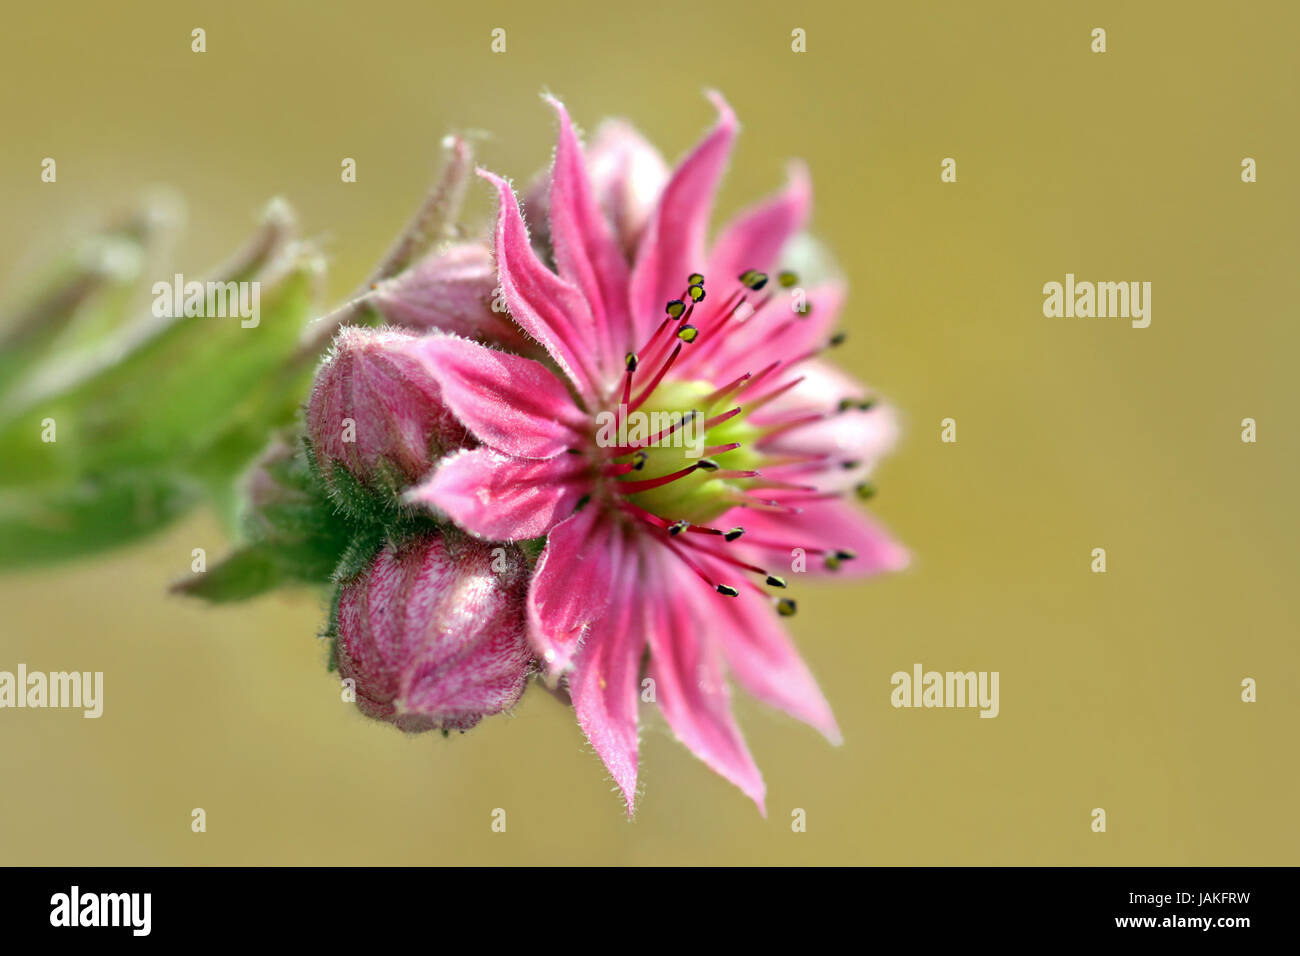 flowering houseleek Stock Photo